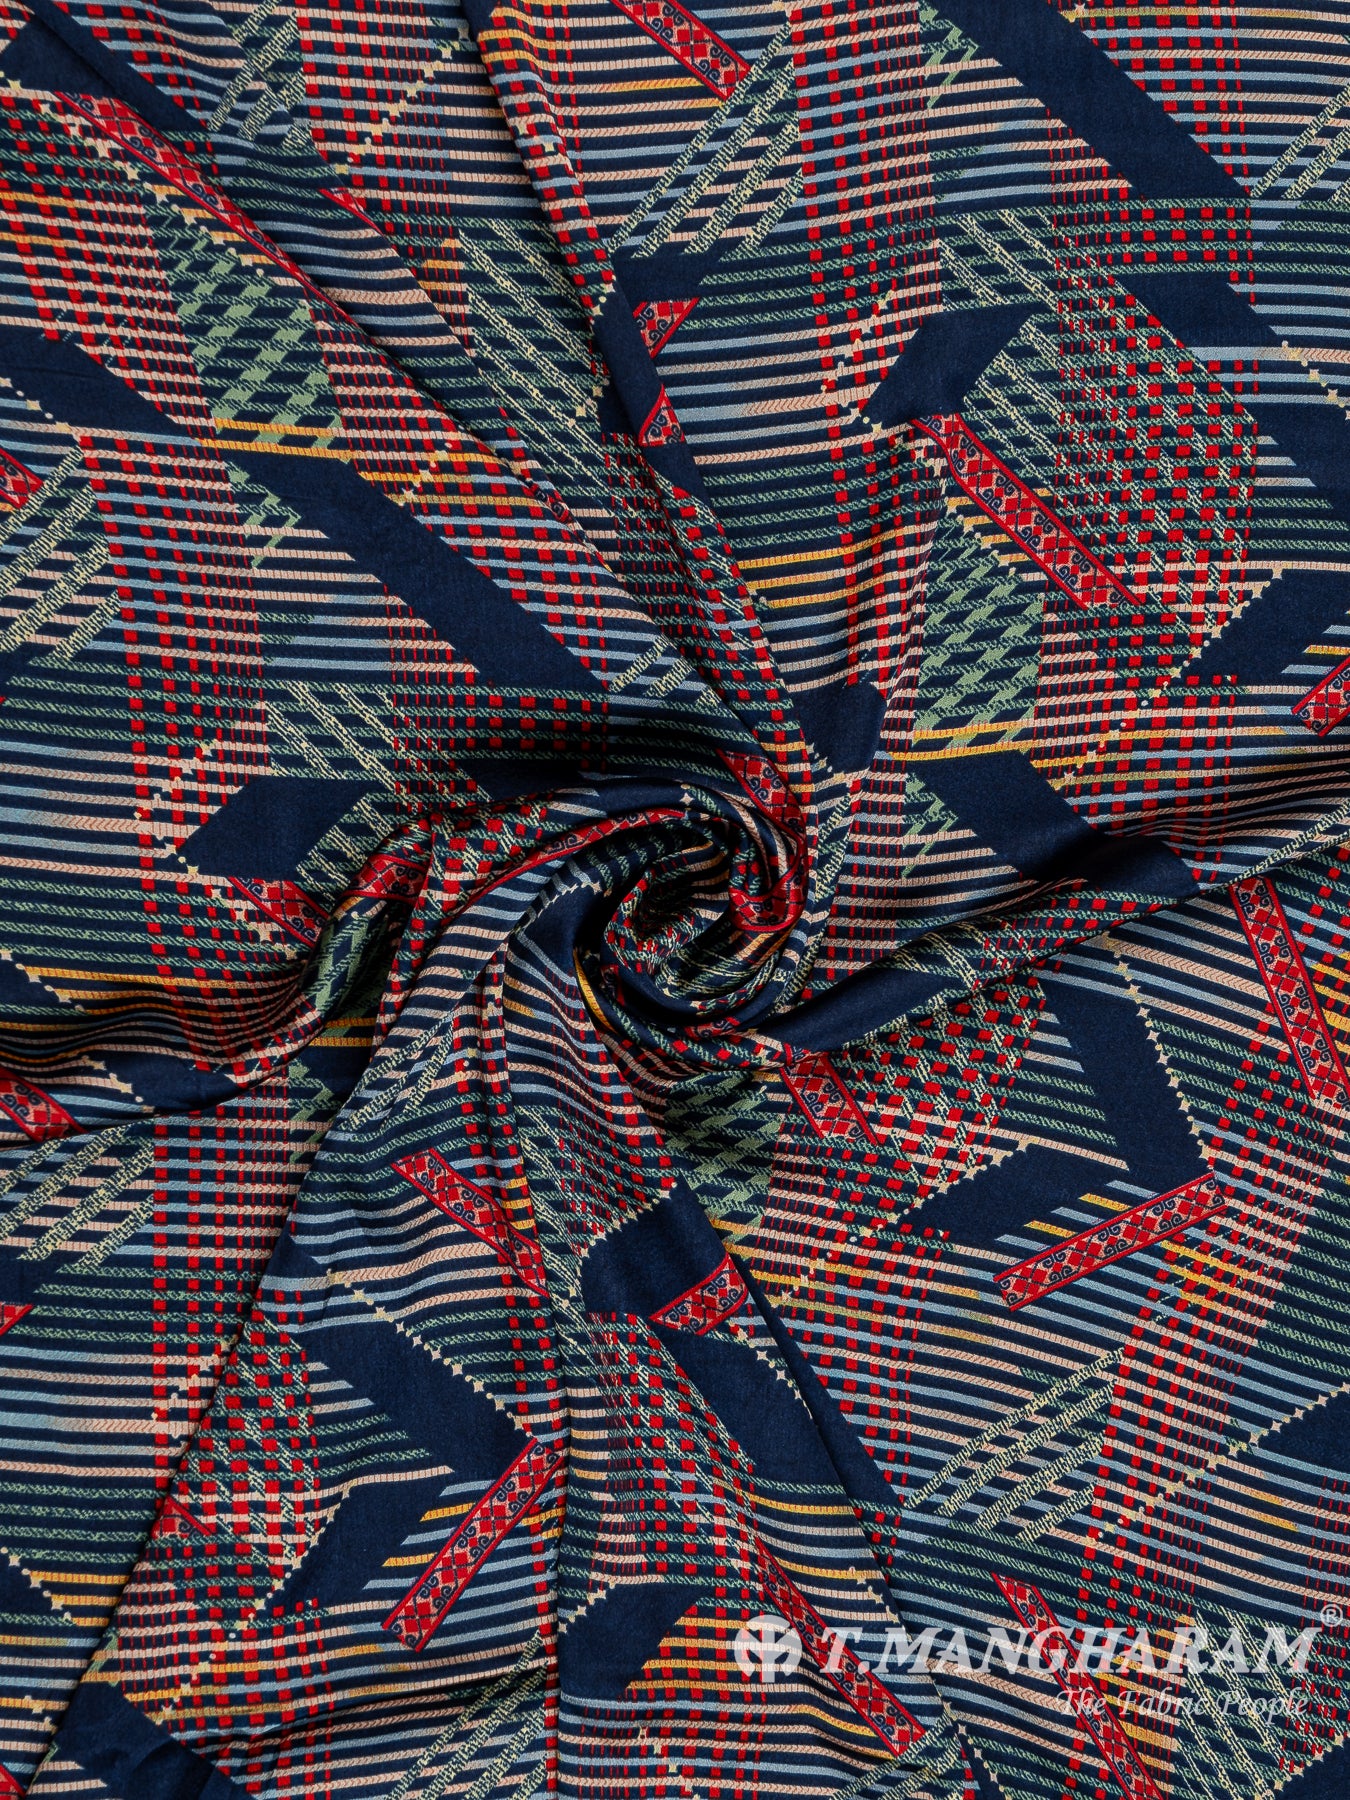 Multicolor Satin Fabric - EB5857 view-1